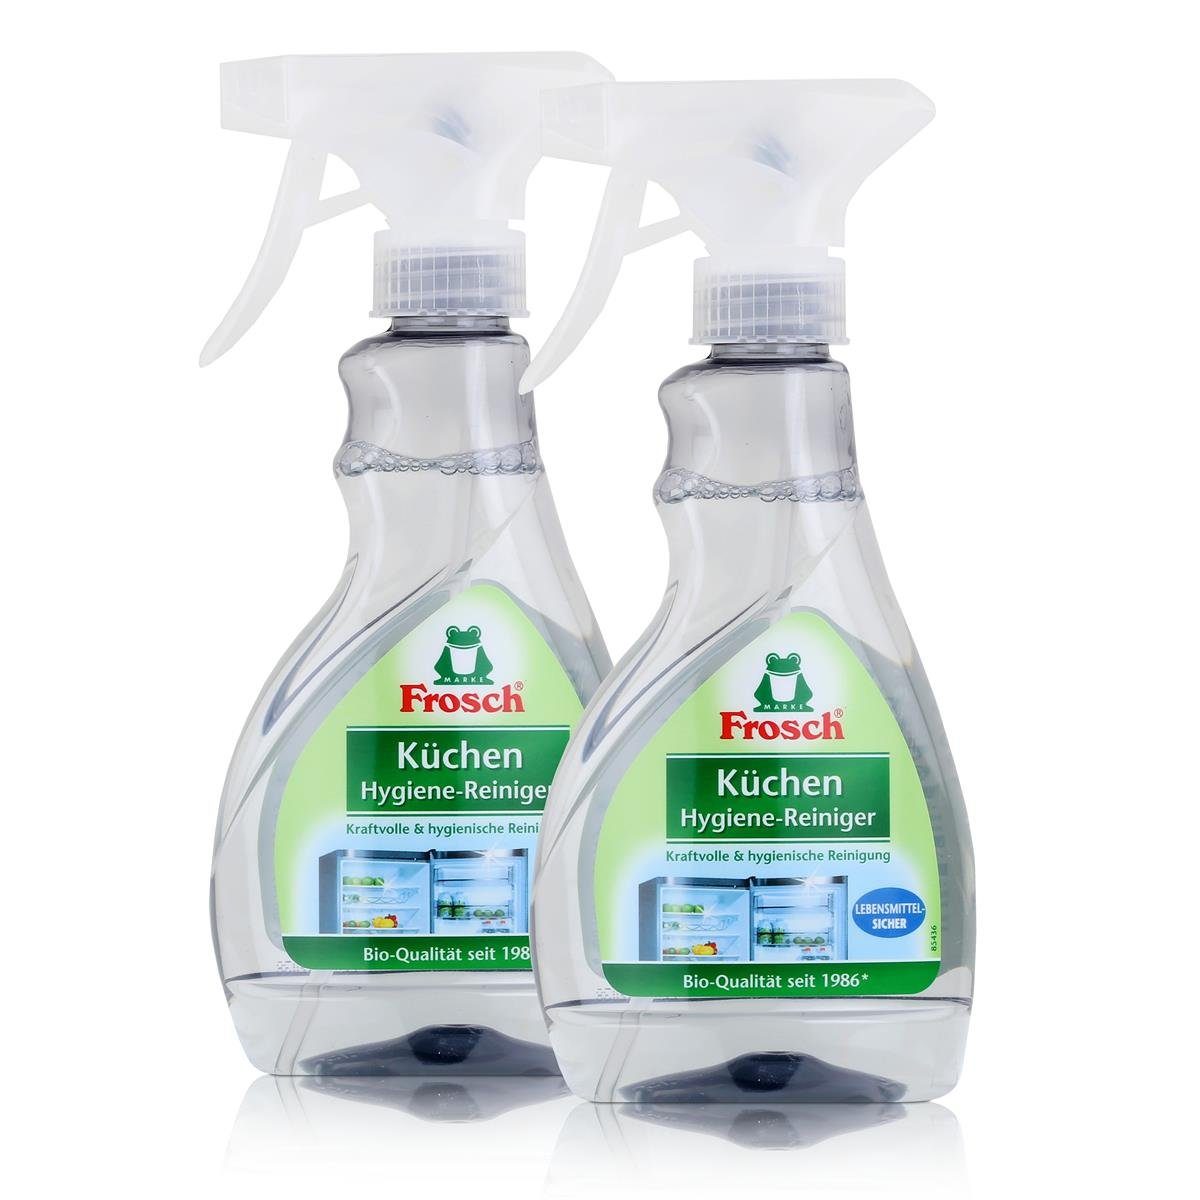 FROSCH Frosch Küchen Hygiene-Reiniger 300ml - Lebensmittel-Sicher (2er Pack) Küchenreiniger